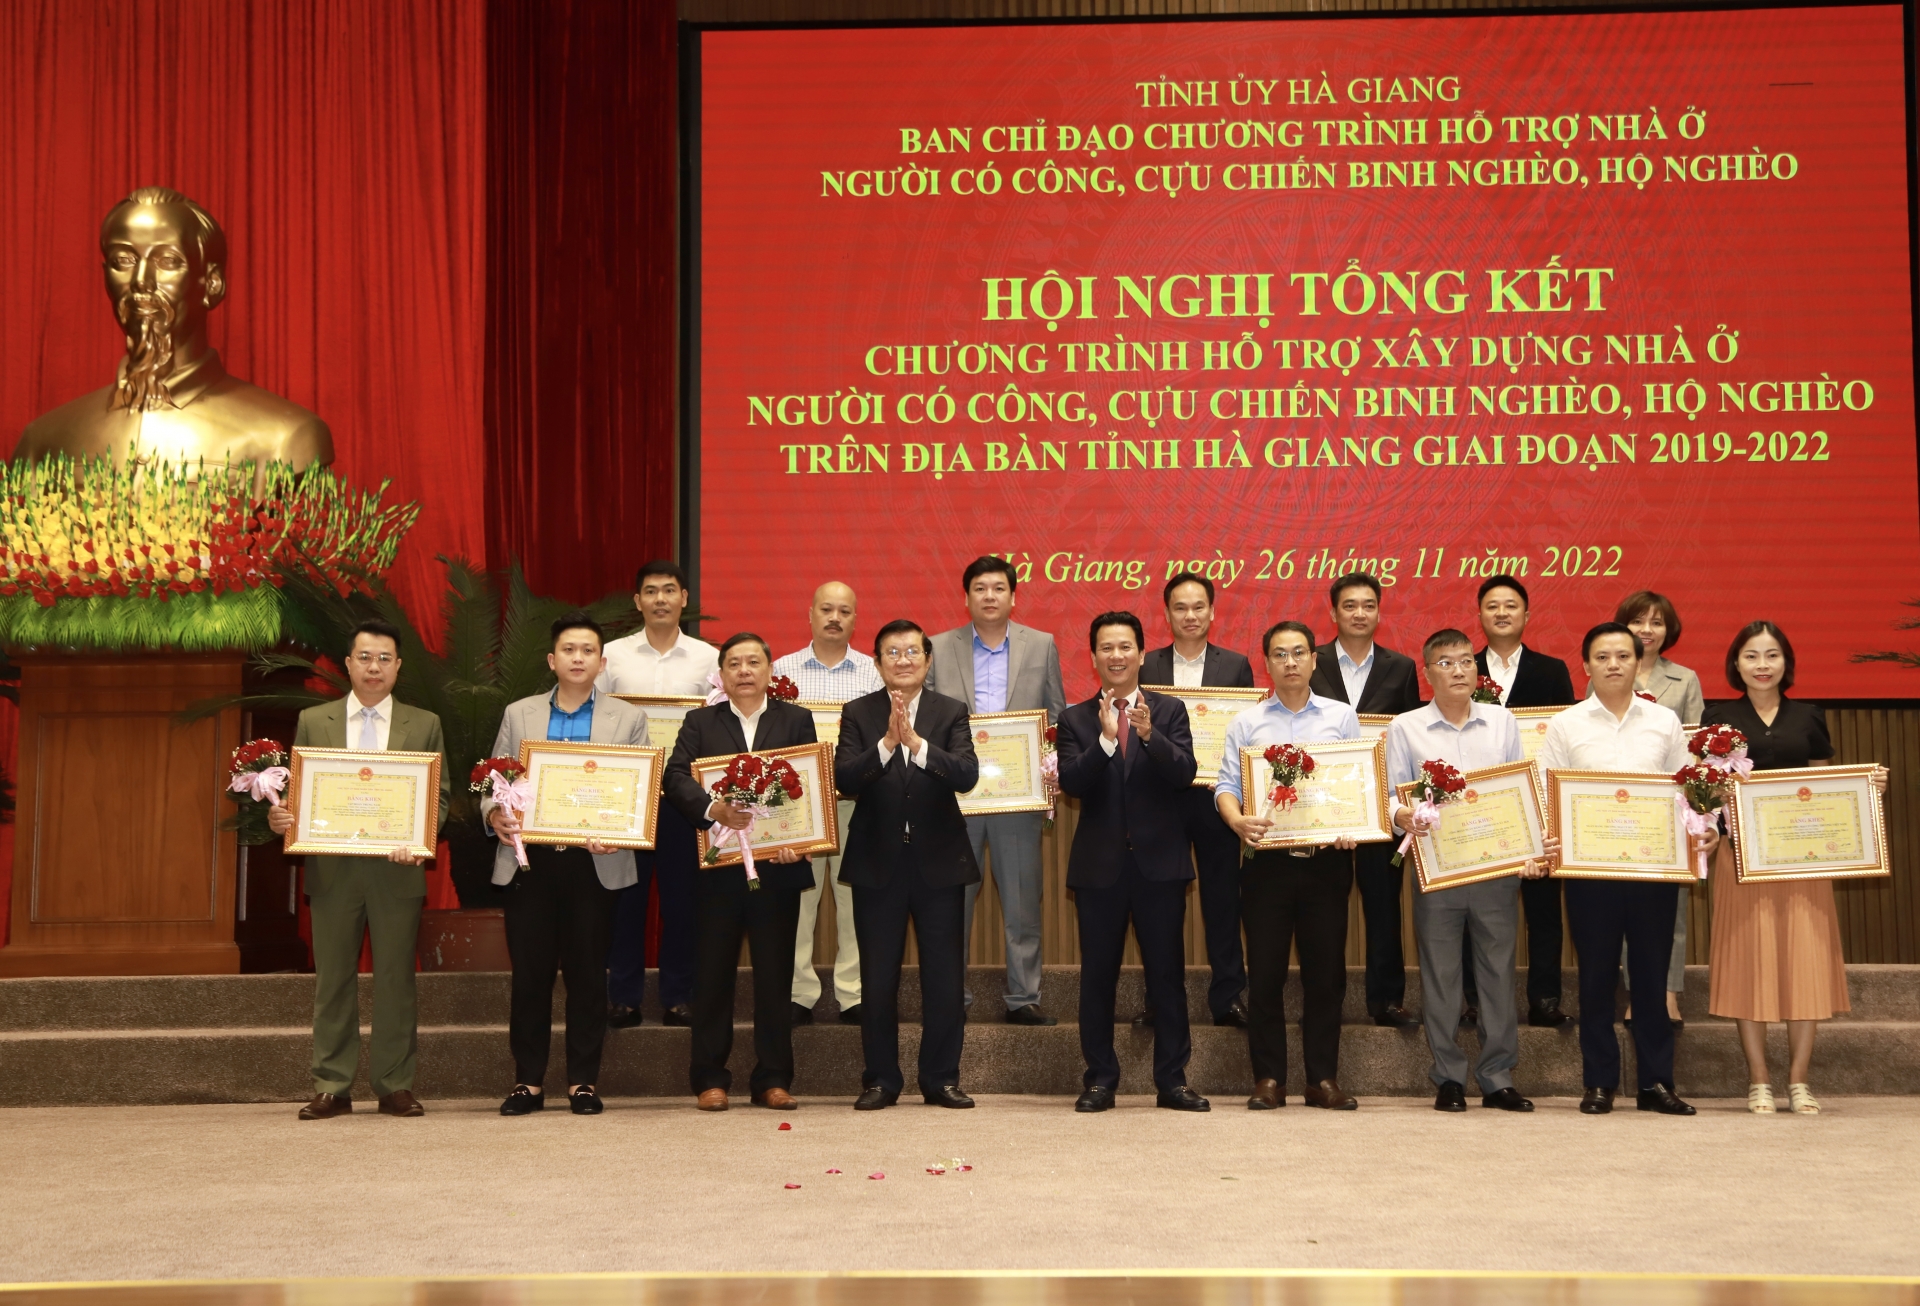 Nguyên Chủ tịch nước Trương Tấn Sang và Bí thư Tỉnh ủy Đặng Quốc Khánh tặng Bằng khen cho các tổ chức, doanh nghiệp có đóng góp lớn cho chương trình